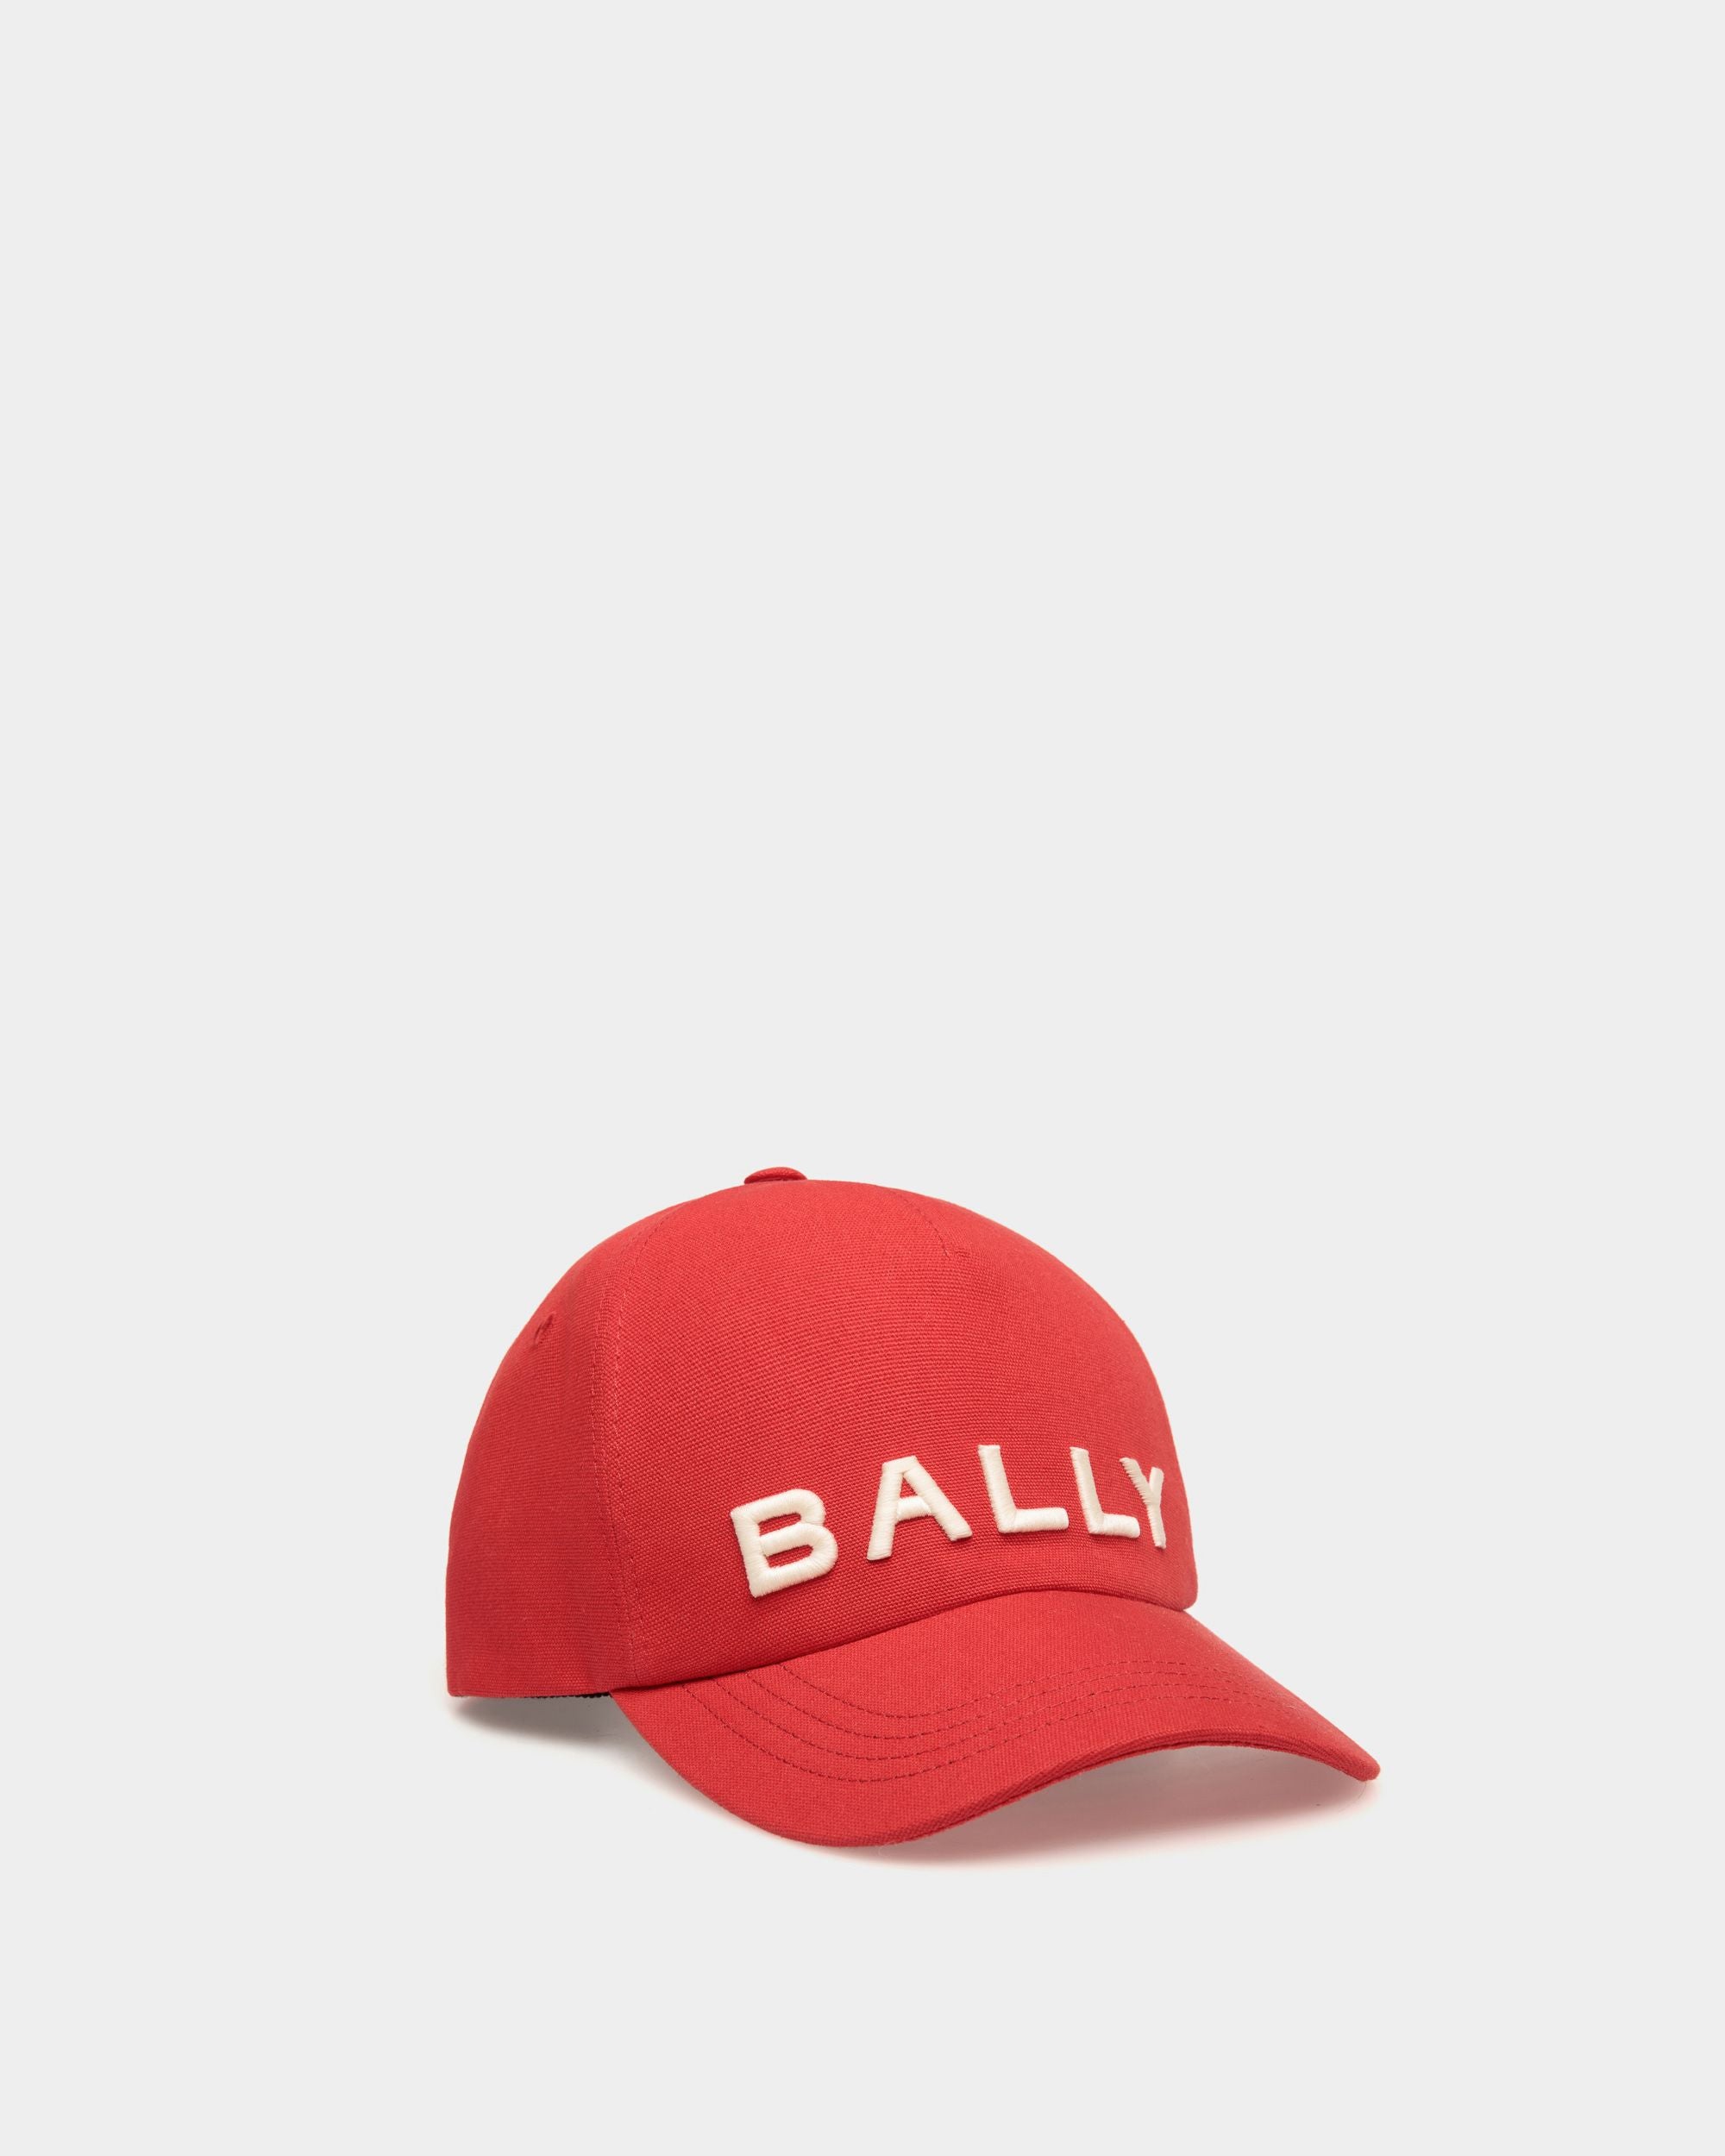 Herren-Baseballmütze aus roter Baumwolle | Bally | Still Life Vorderseite